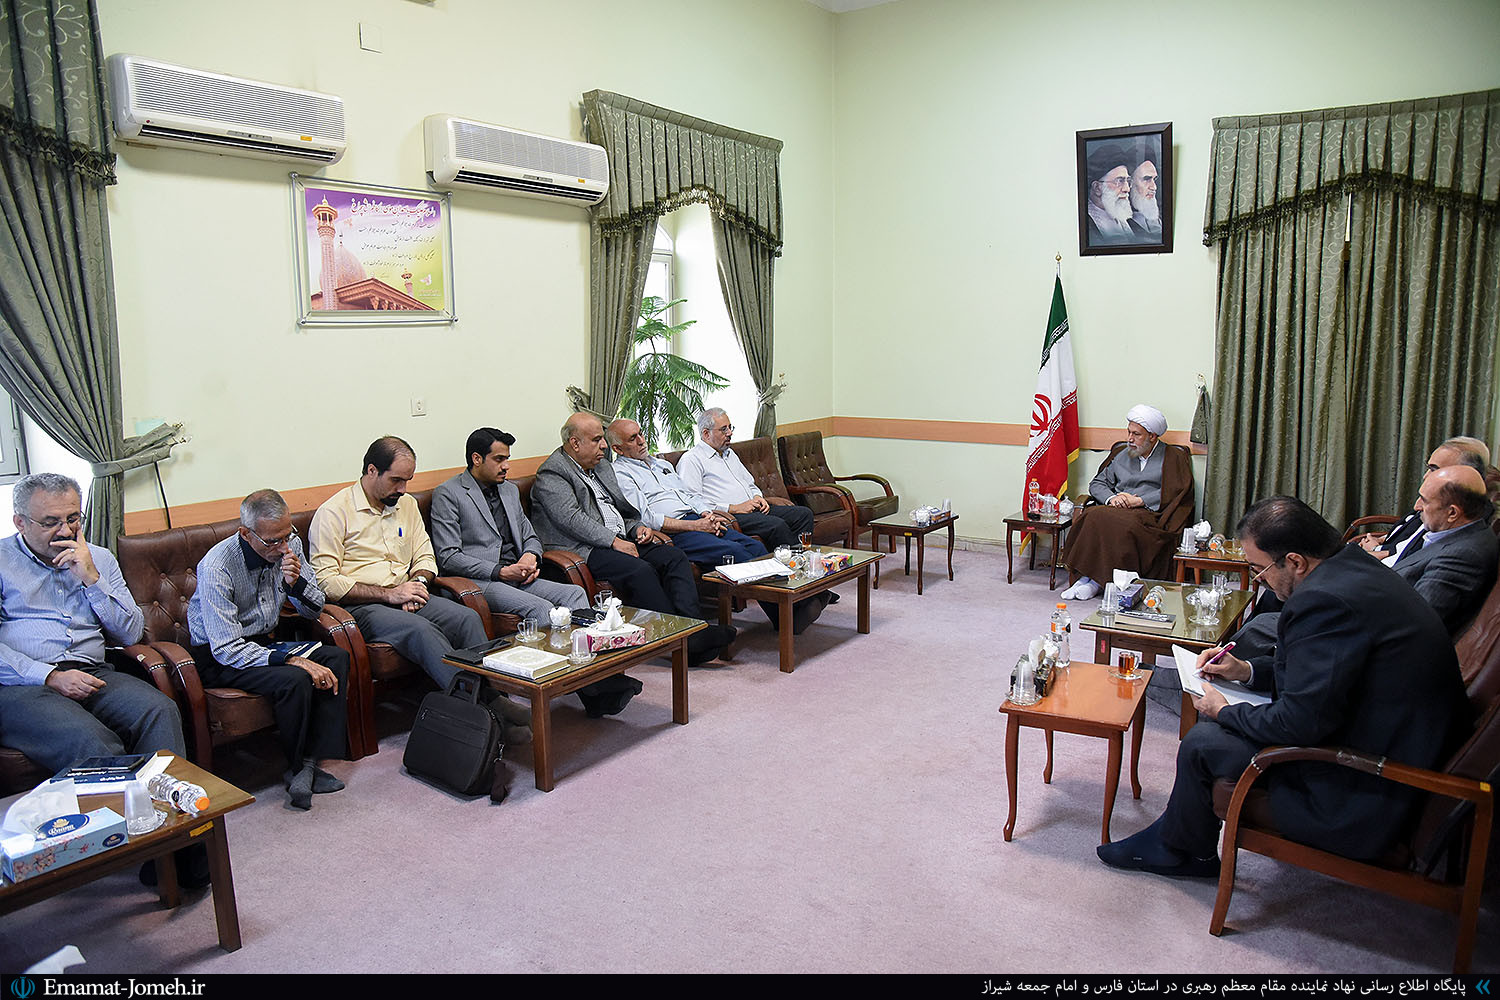 دیدار اعضاء کارگروه فرهنگستان علوم پزشکی ایران در جنوب کشور با آیت الله دژکام